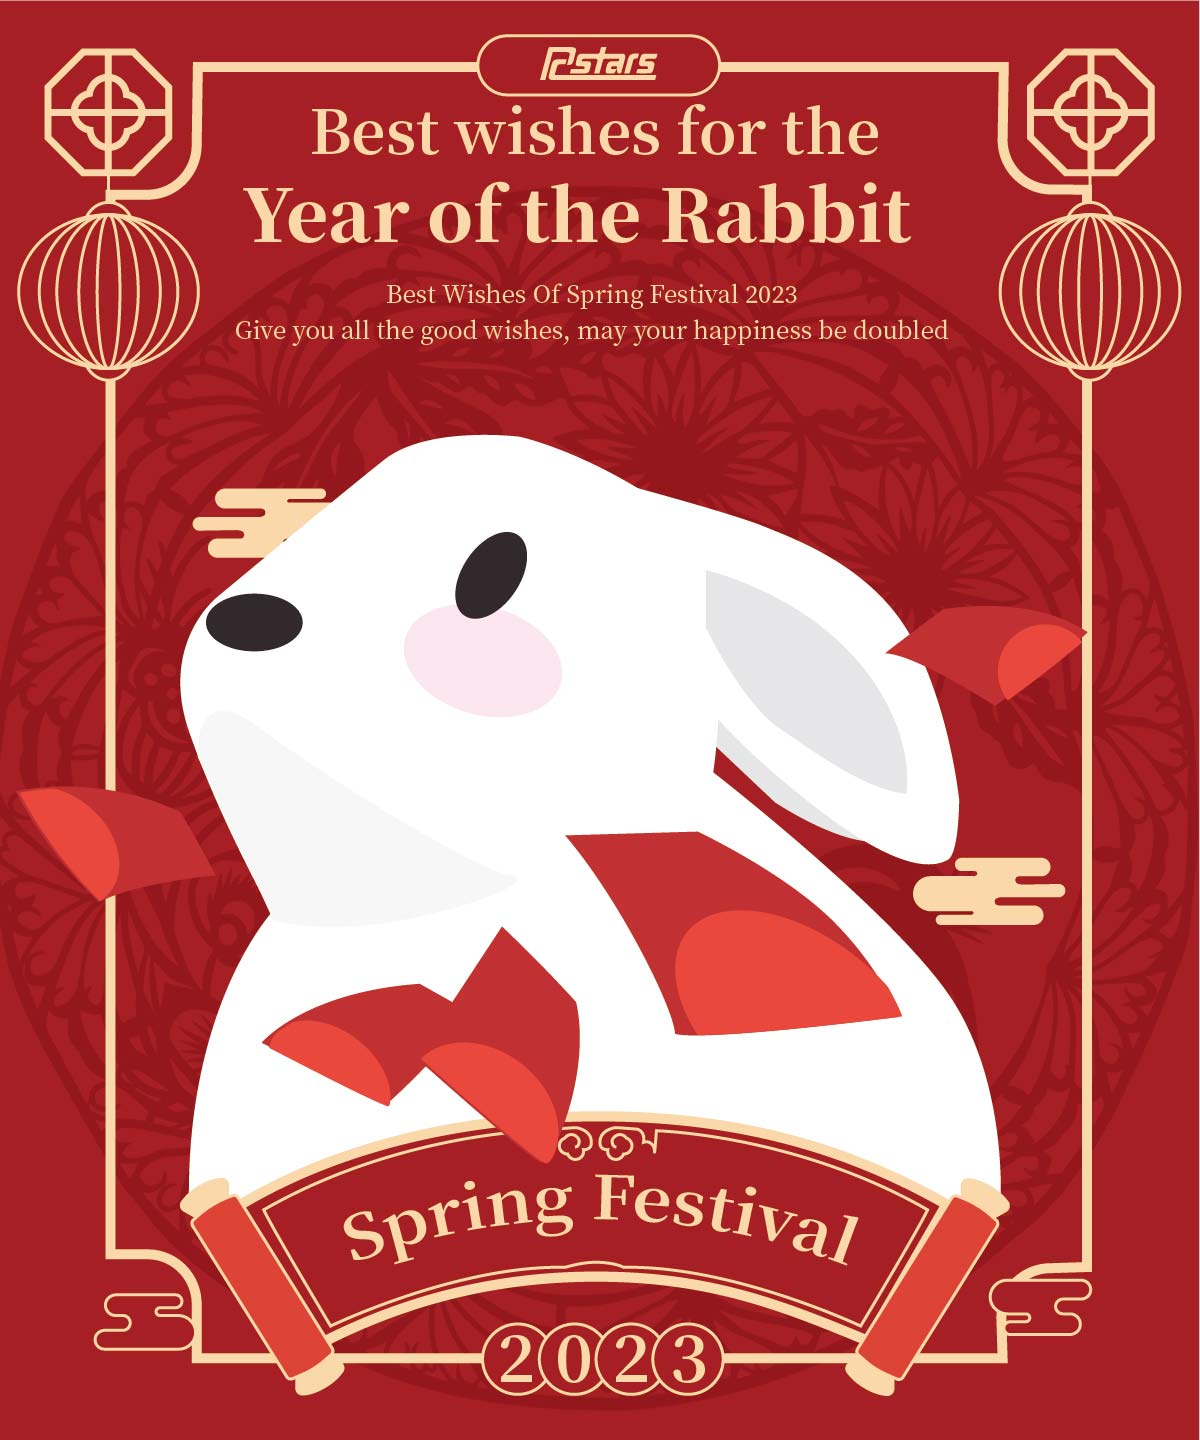 2023 Spring Festival Holidays Notice